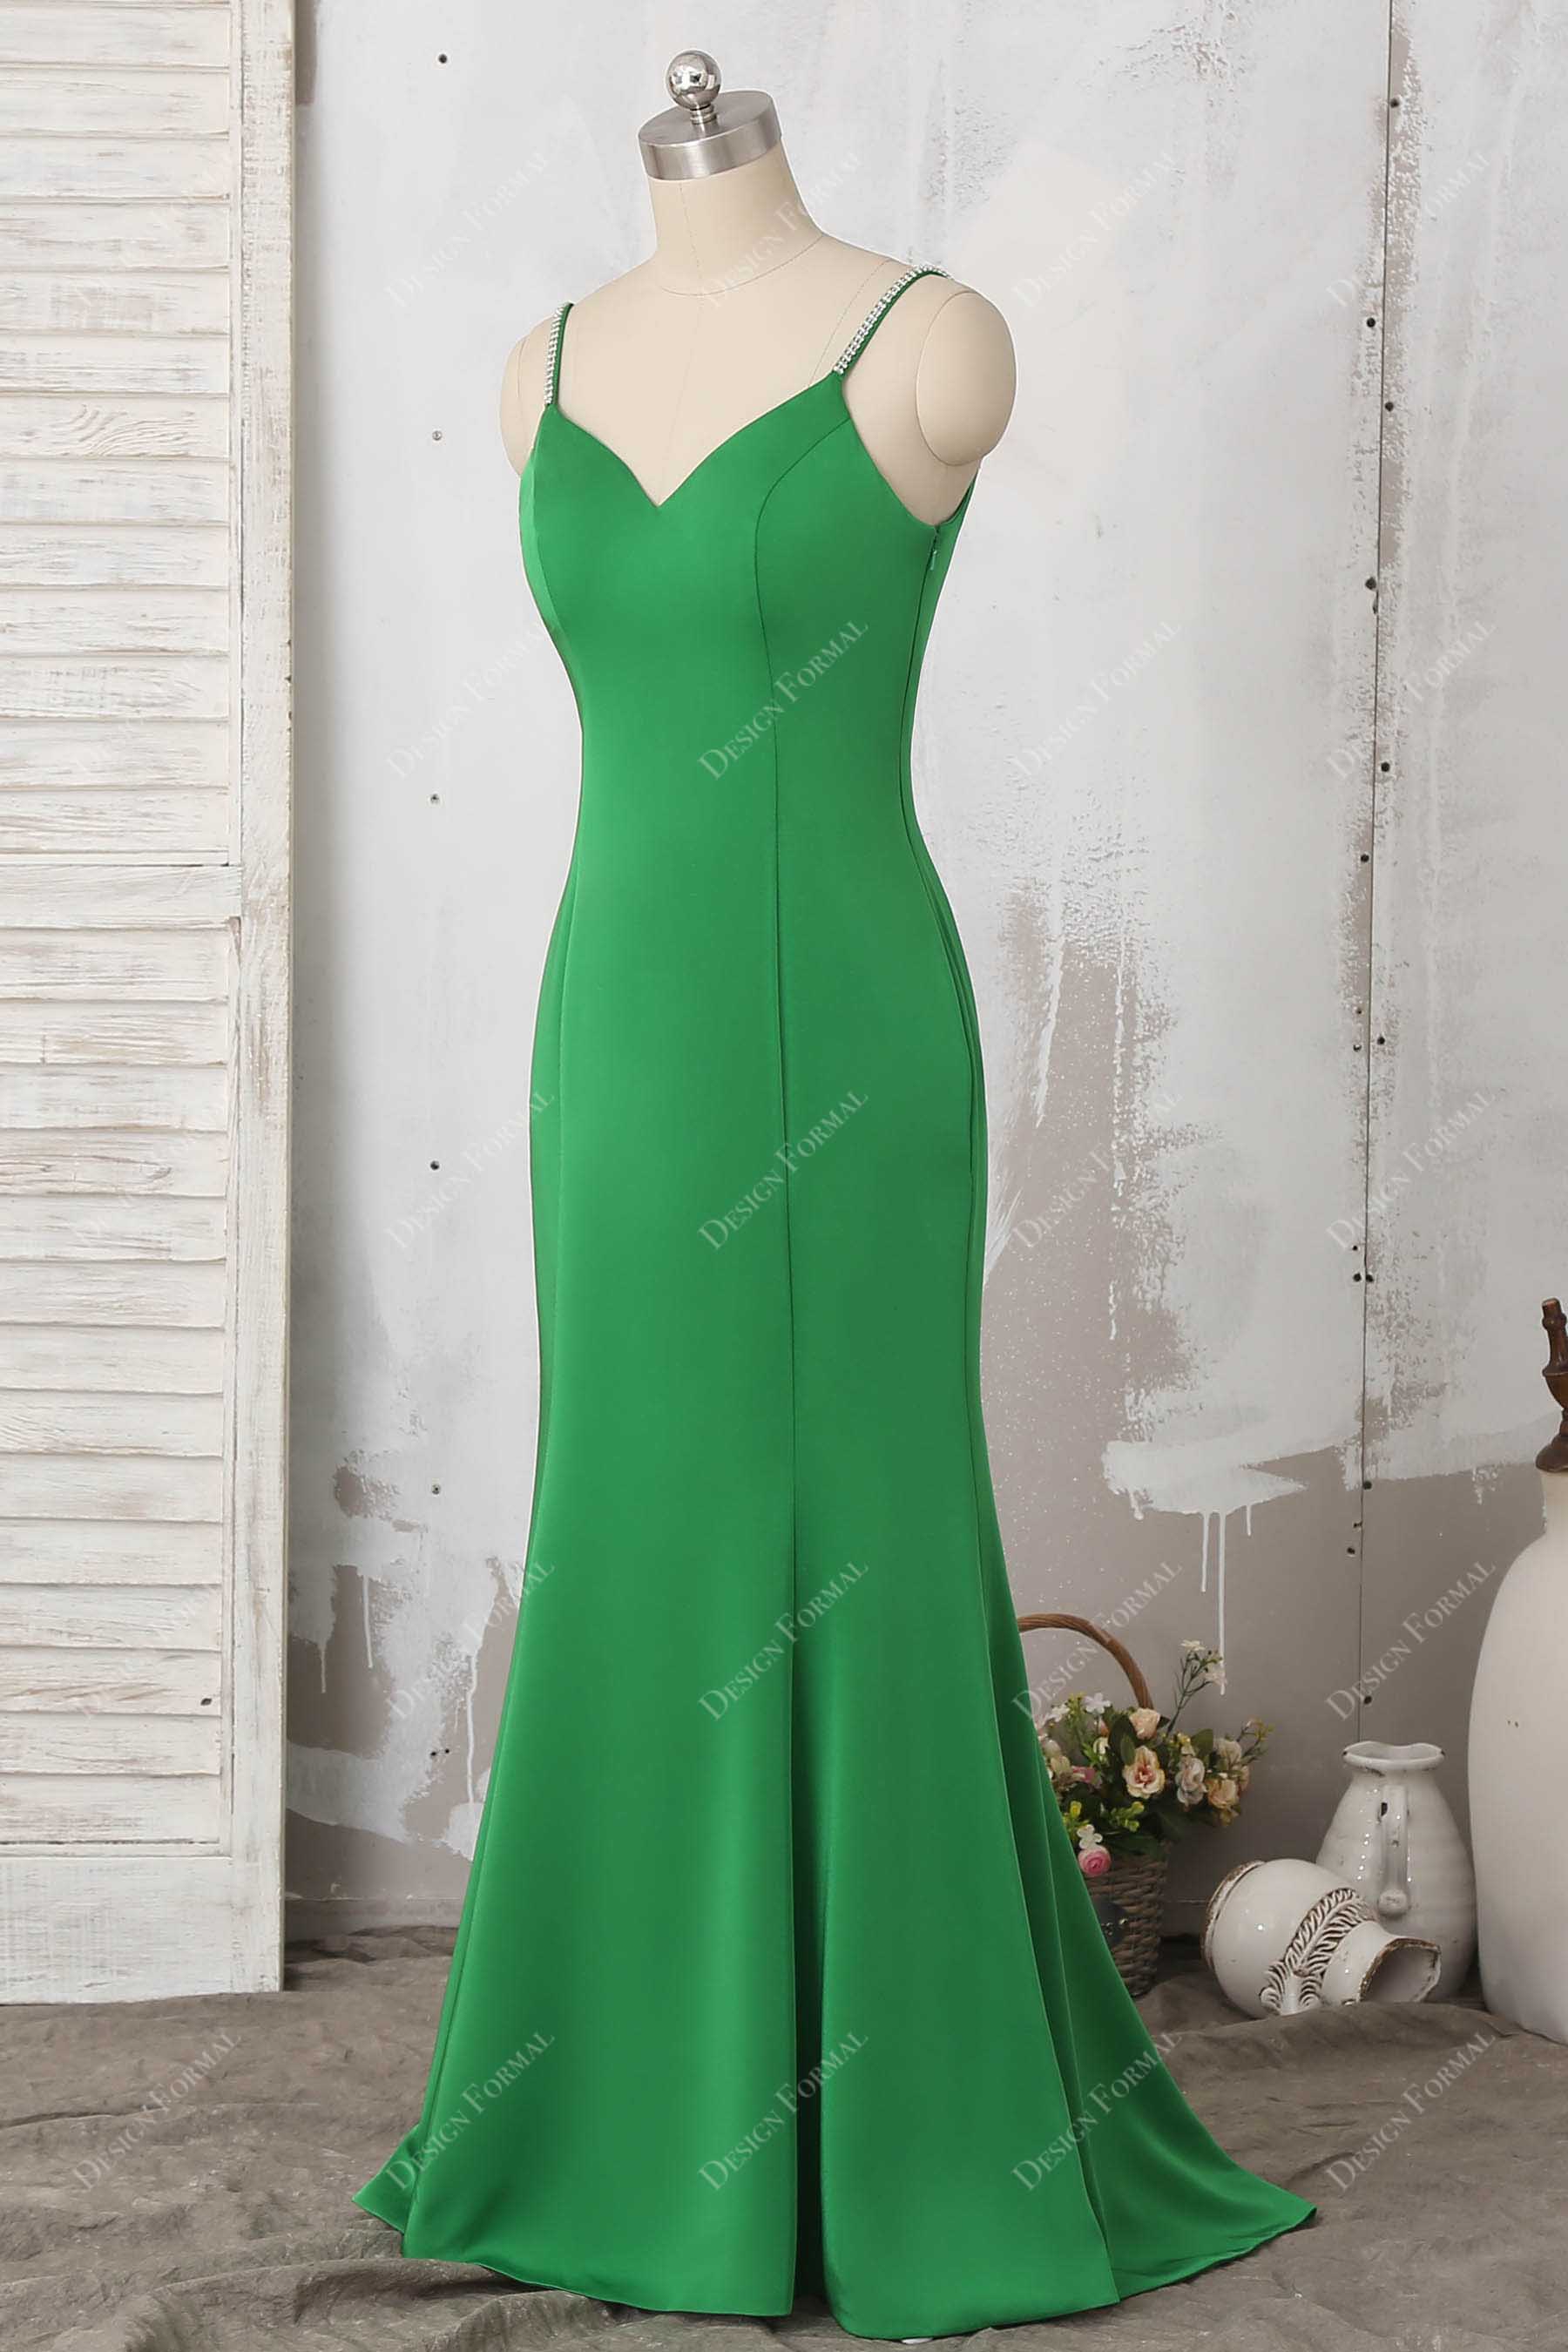 spaghetti straps sleeveless green floor length prom dress